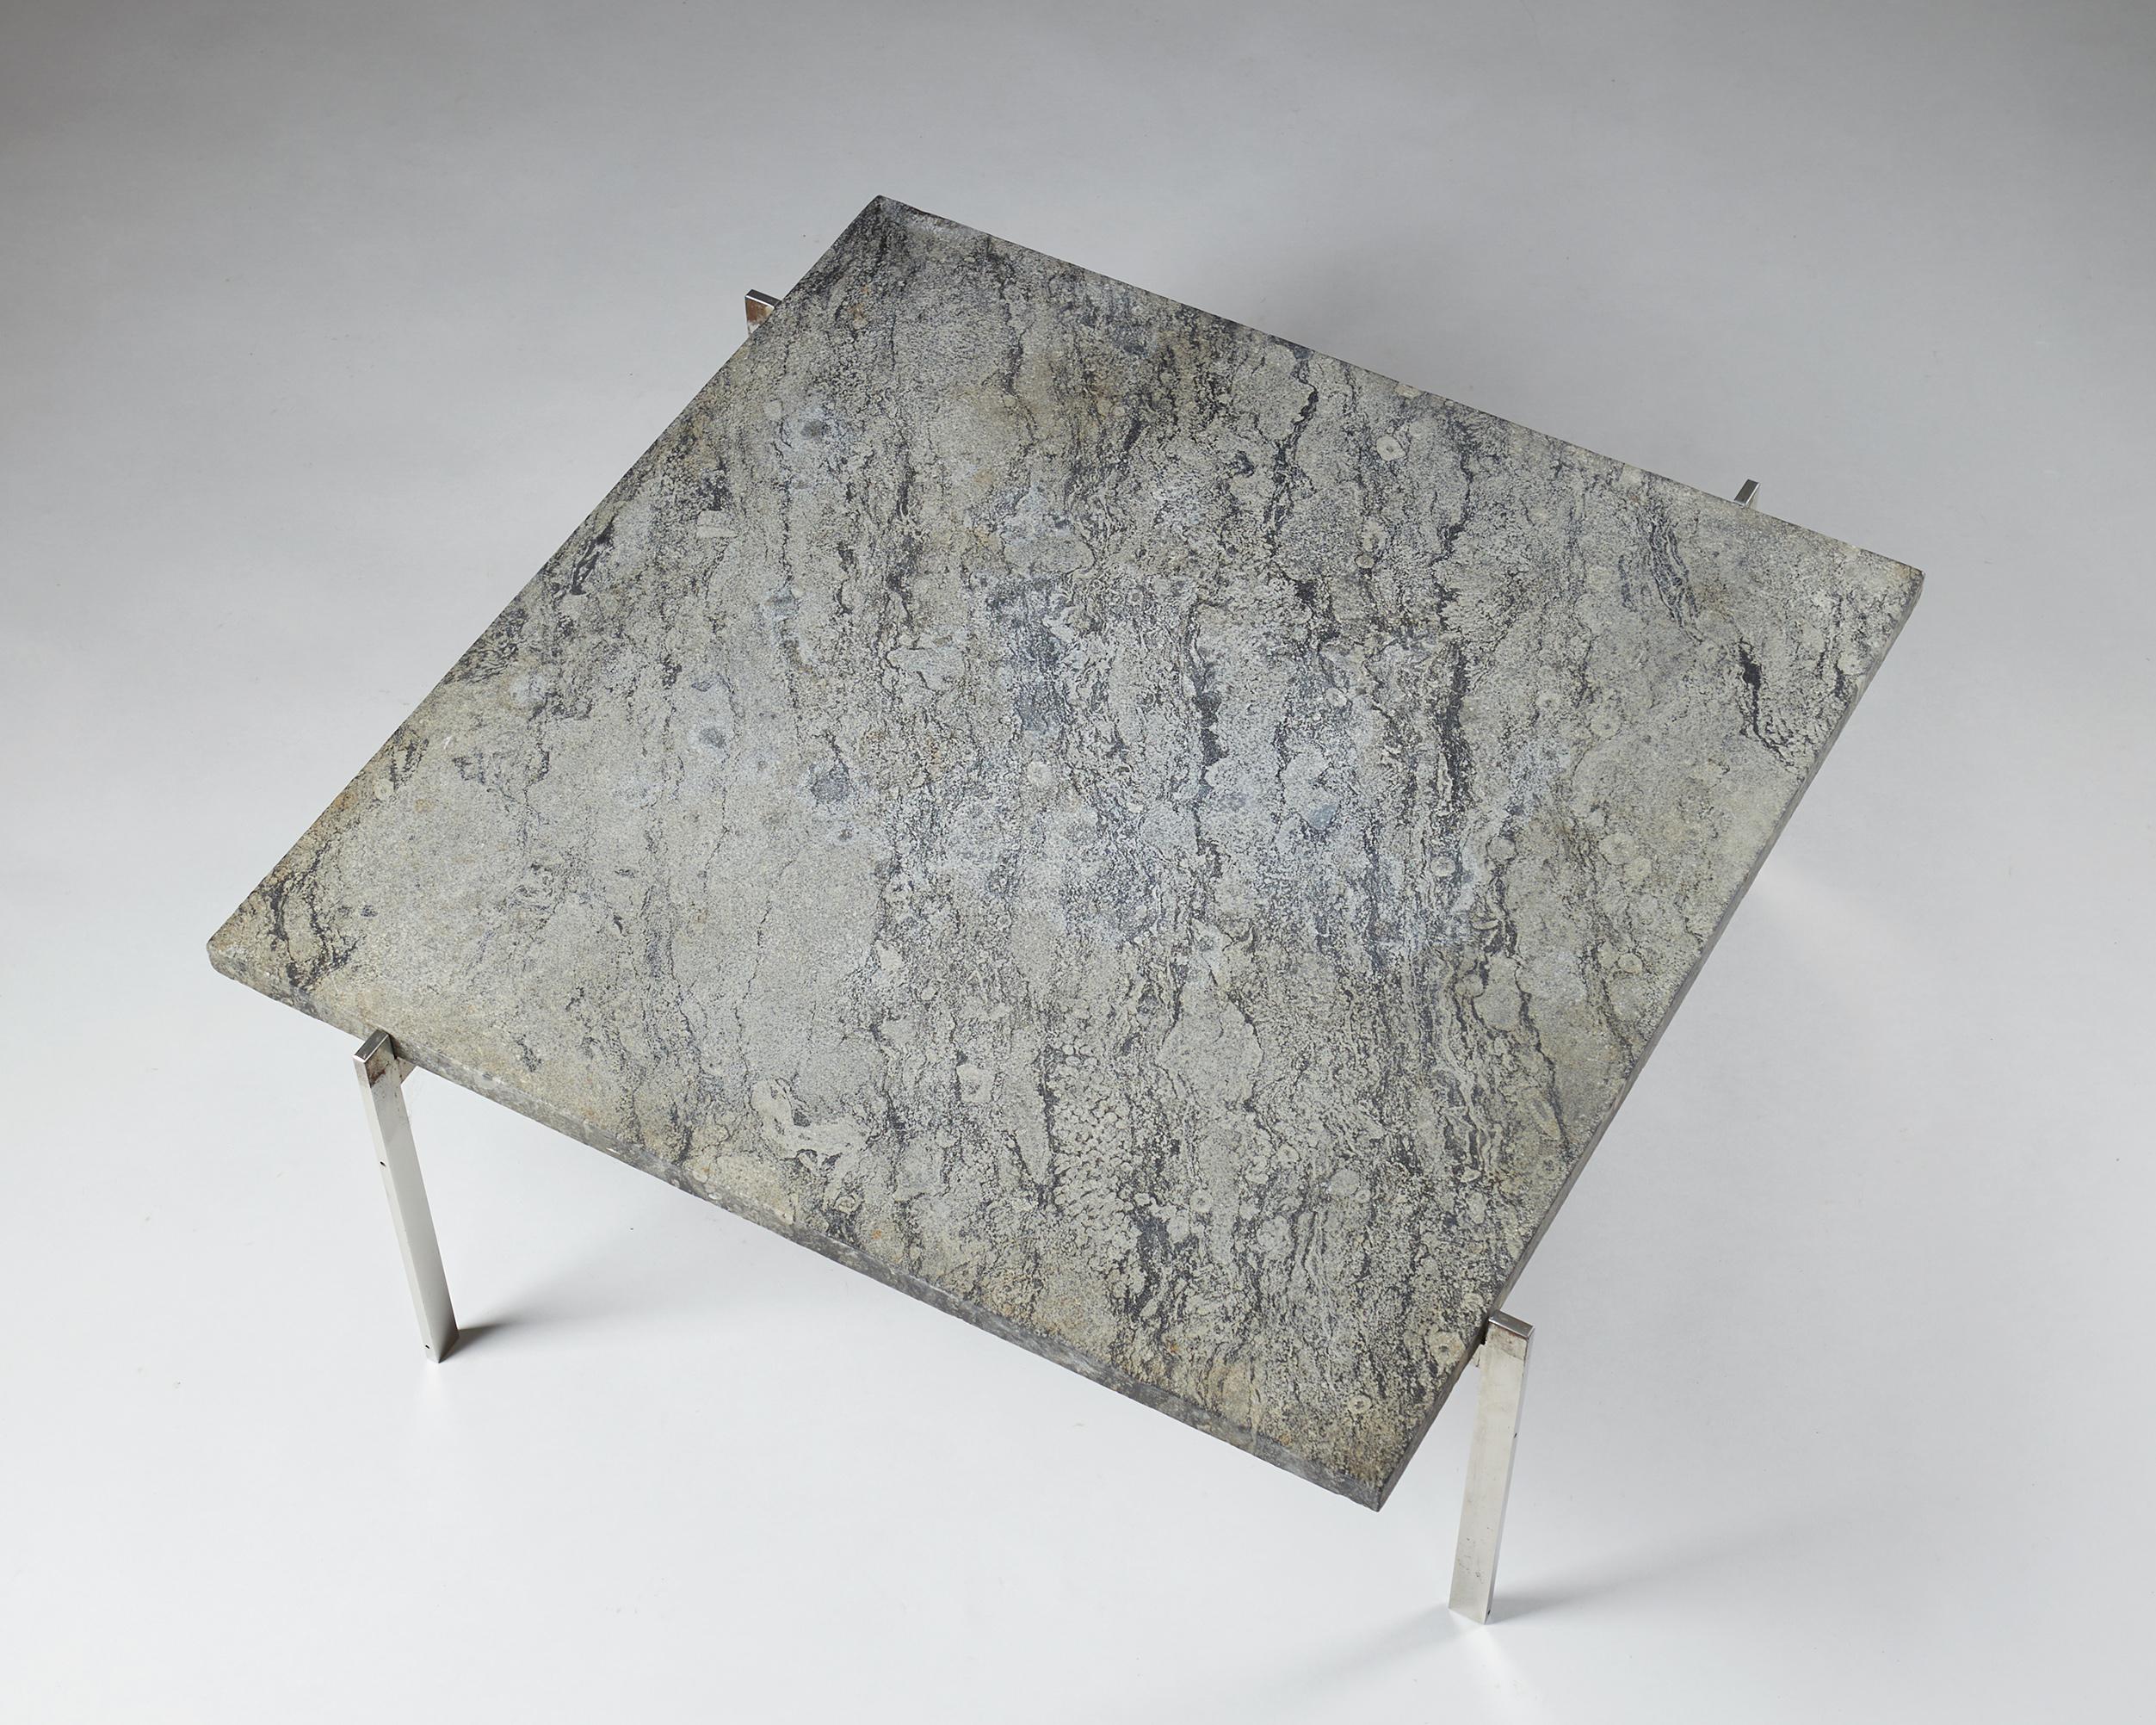 Table d'appoint PK61 conçue par Poul Kjaerholm pour E. Kold Christensen,
Danemark, 1956.

Acier et marbre de Porsgrunn avec fossiles.

H : 33 cm/ 13